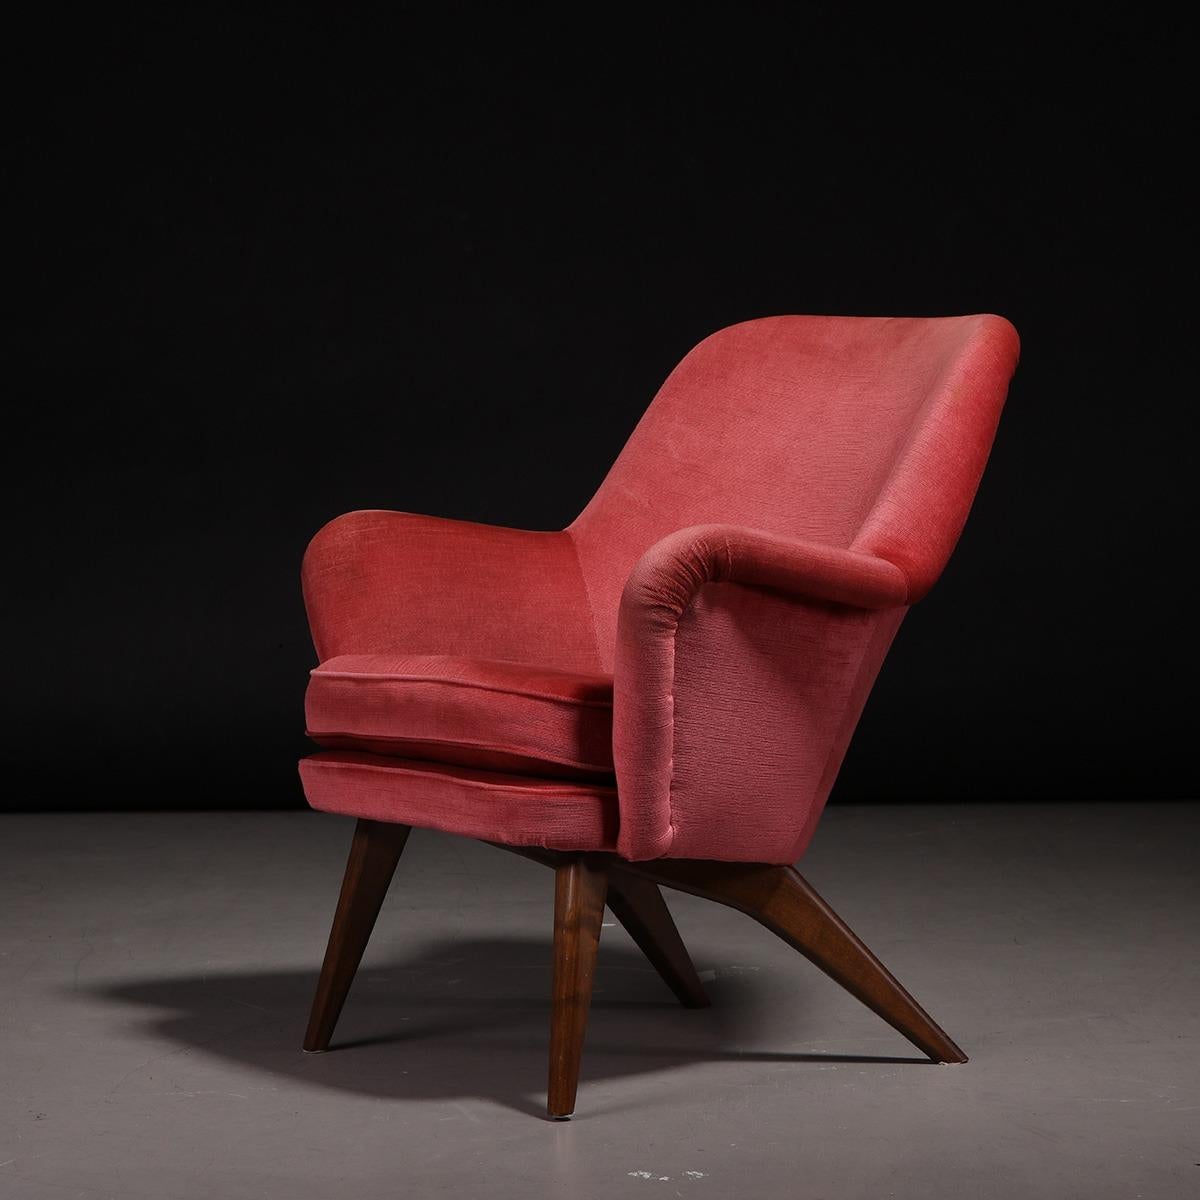 Finnischer Lounge-Sessel Modell Pedro, entworfen von Carl Gustaf Hiort af Ornäs für Puunveisto Oy in Finnland, 1950er Jahre.

Dieses elegante Sesselmodell des finnischen Architekten Carl Gustaf Hiort zeichnet sich durch ein außergewöhnliches